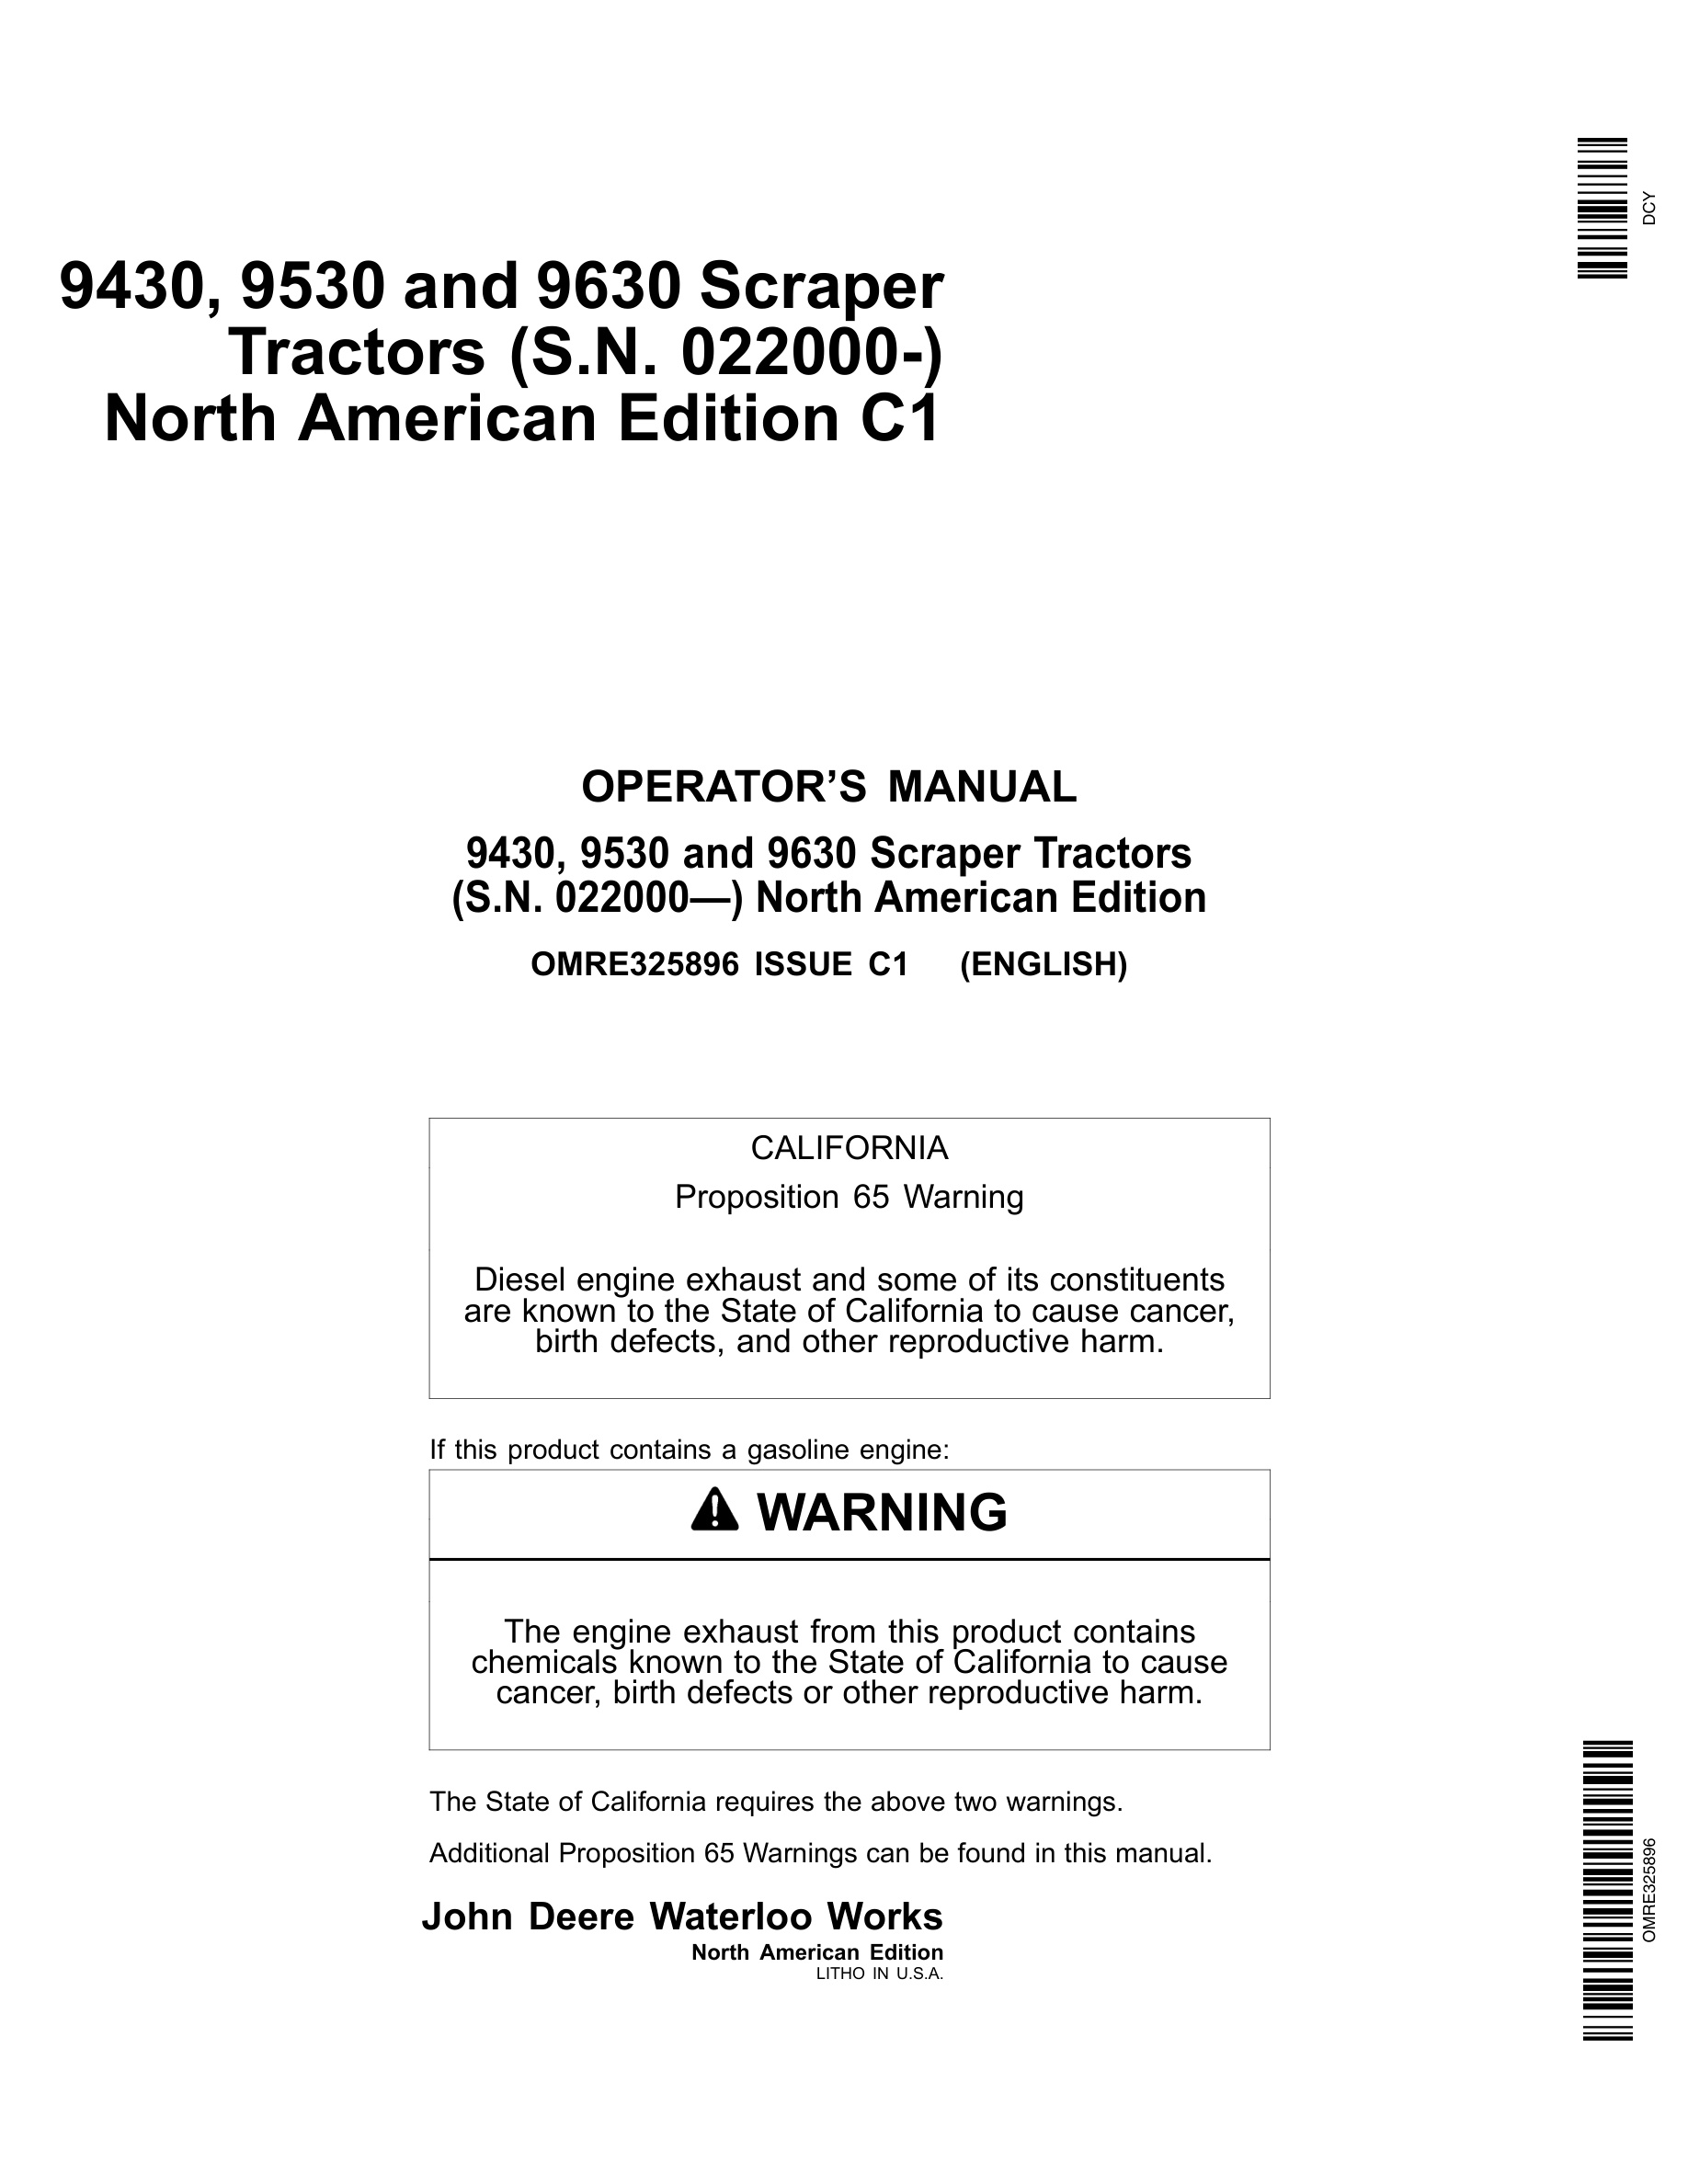 John Deere 9430, 9530 and 9630 Tractor Operator Manual OMRE325896-1